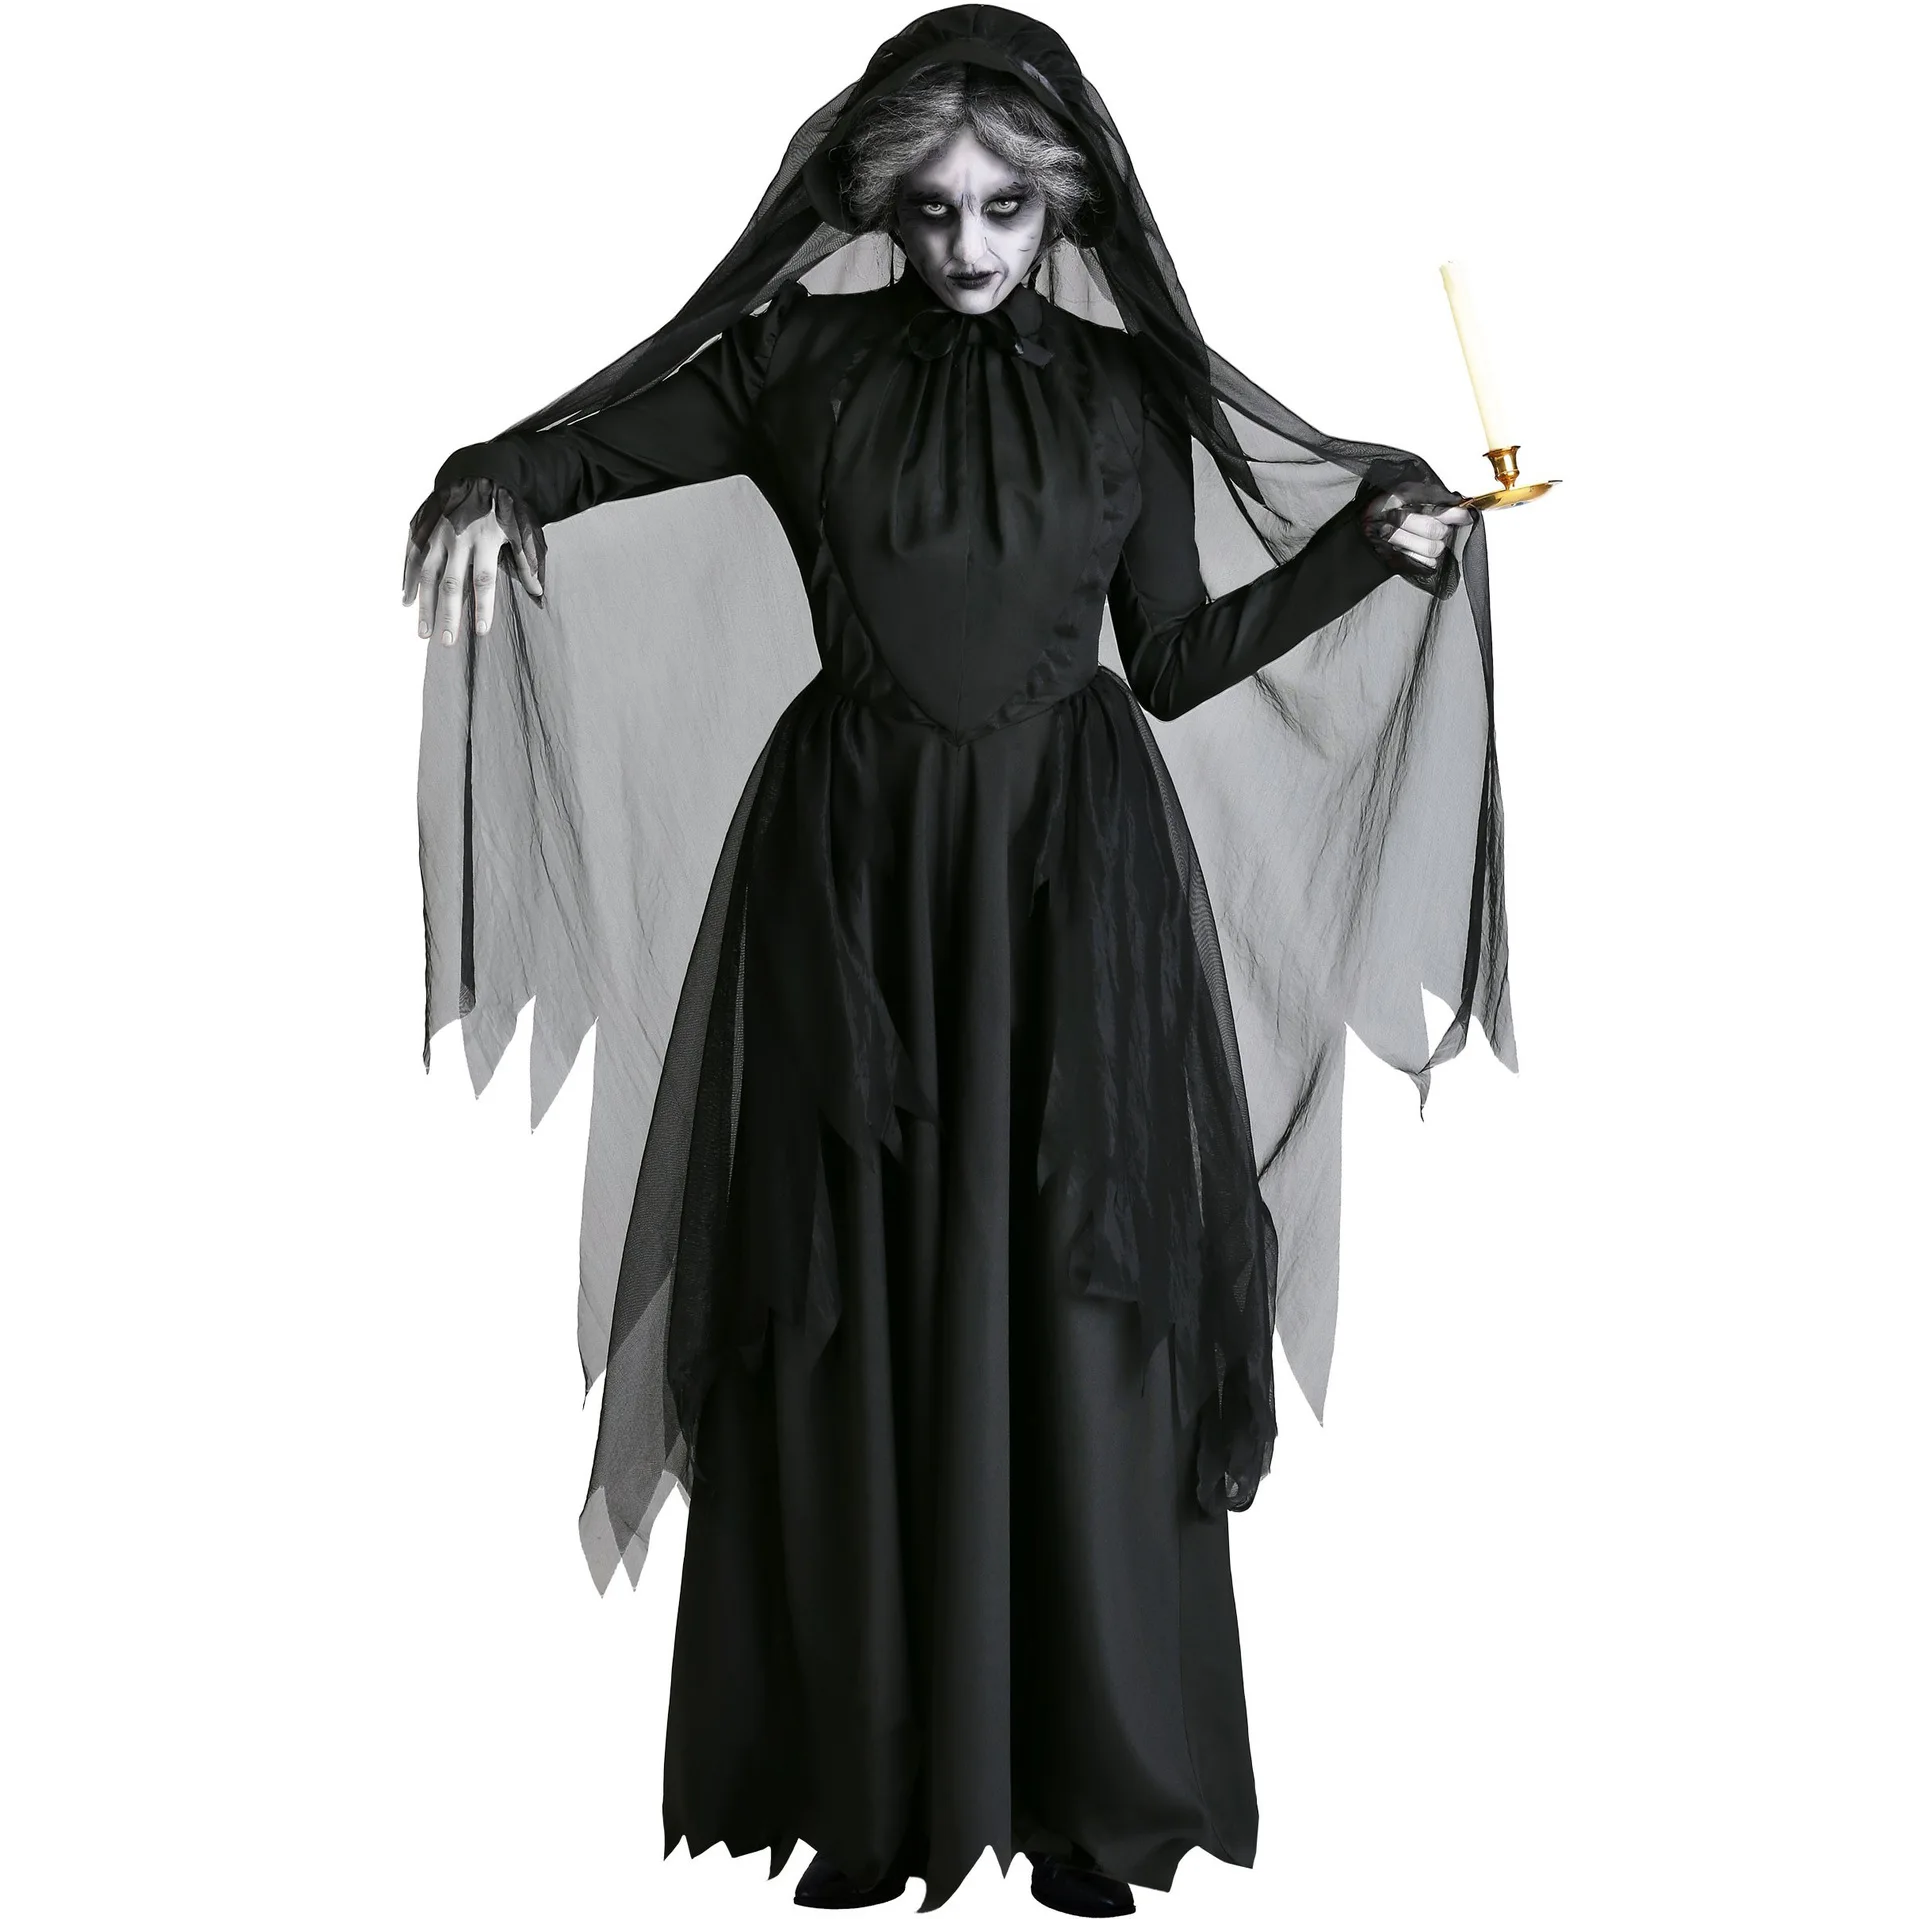 

Женский костюм в виде привидения для ролевых игр, костюм ведьмы, костюм невесты вампира, костюм на Хэллоуин, Женский аниме для косплея